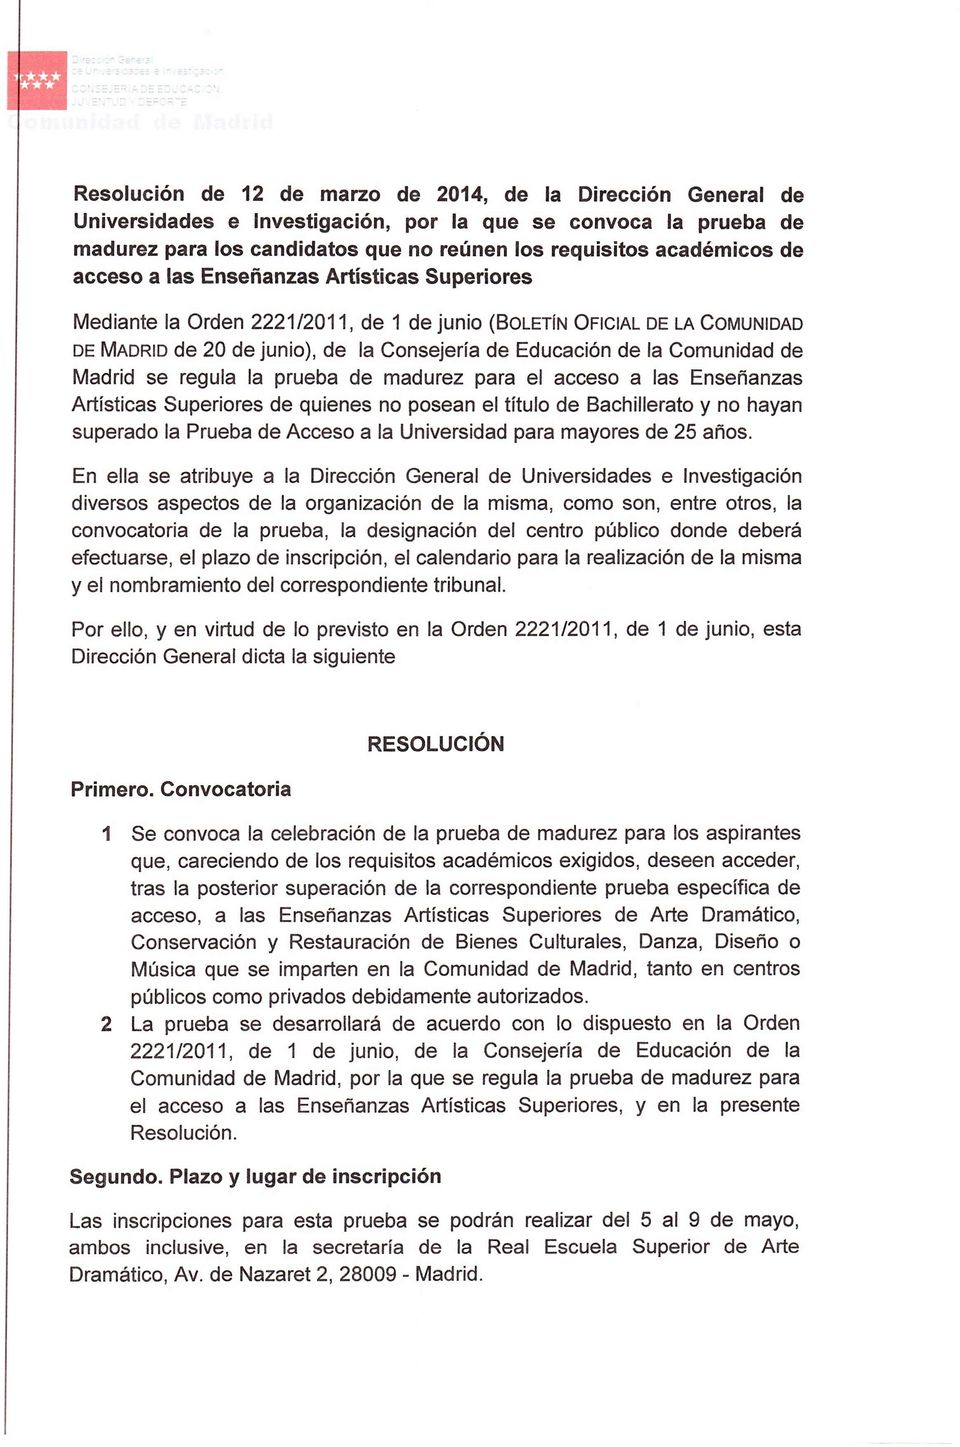 de Madrid se regula la prueba de madurez para el acceso a las Enseñanzas Artísticas Superiores de quienes no posean el título de Bachillerato y no hayan superado la Prueba de Acceso a la Universidad